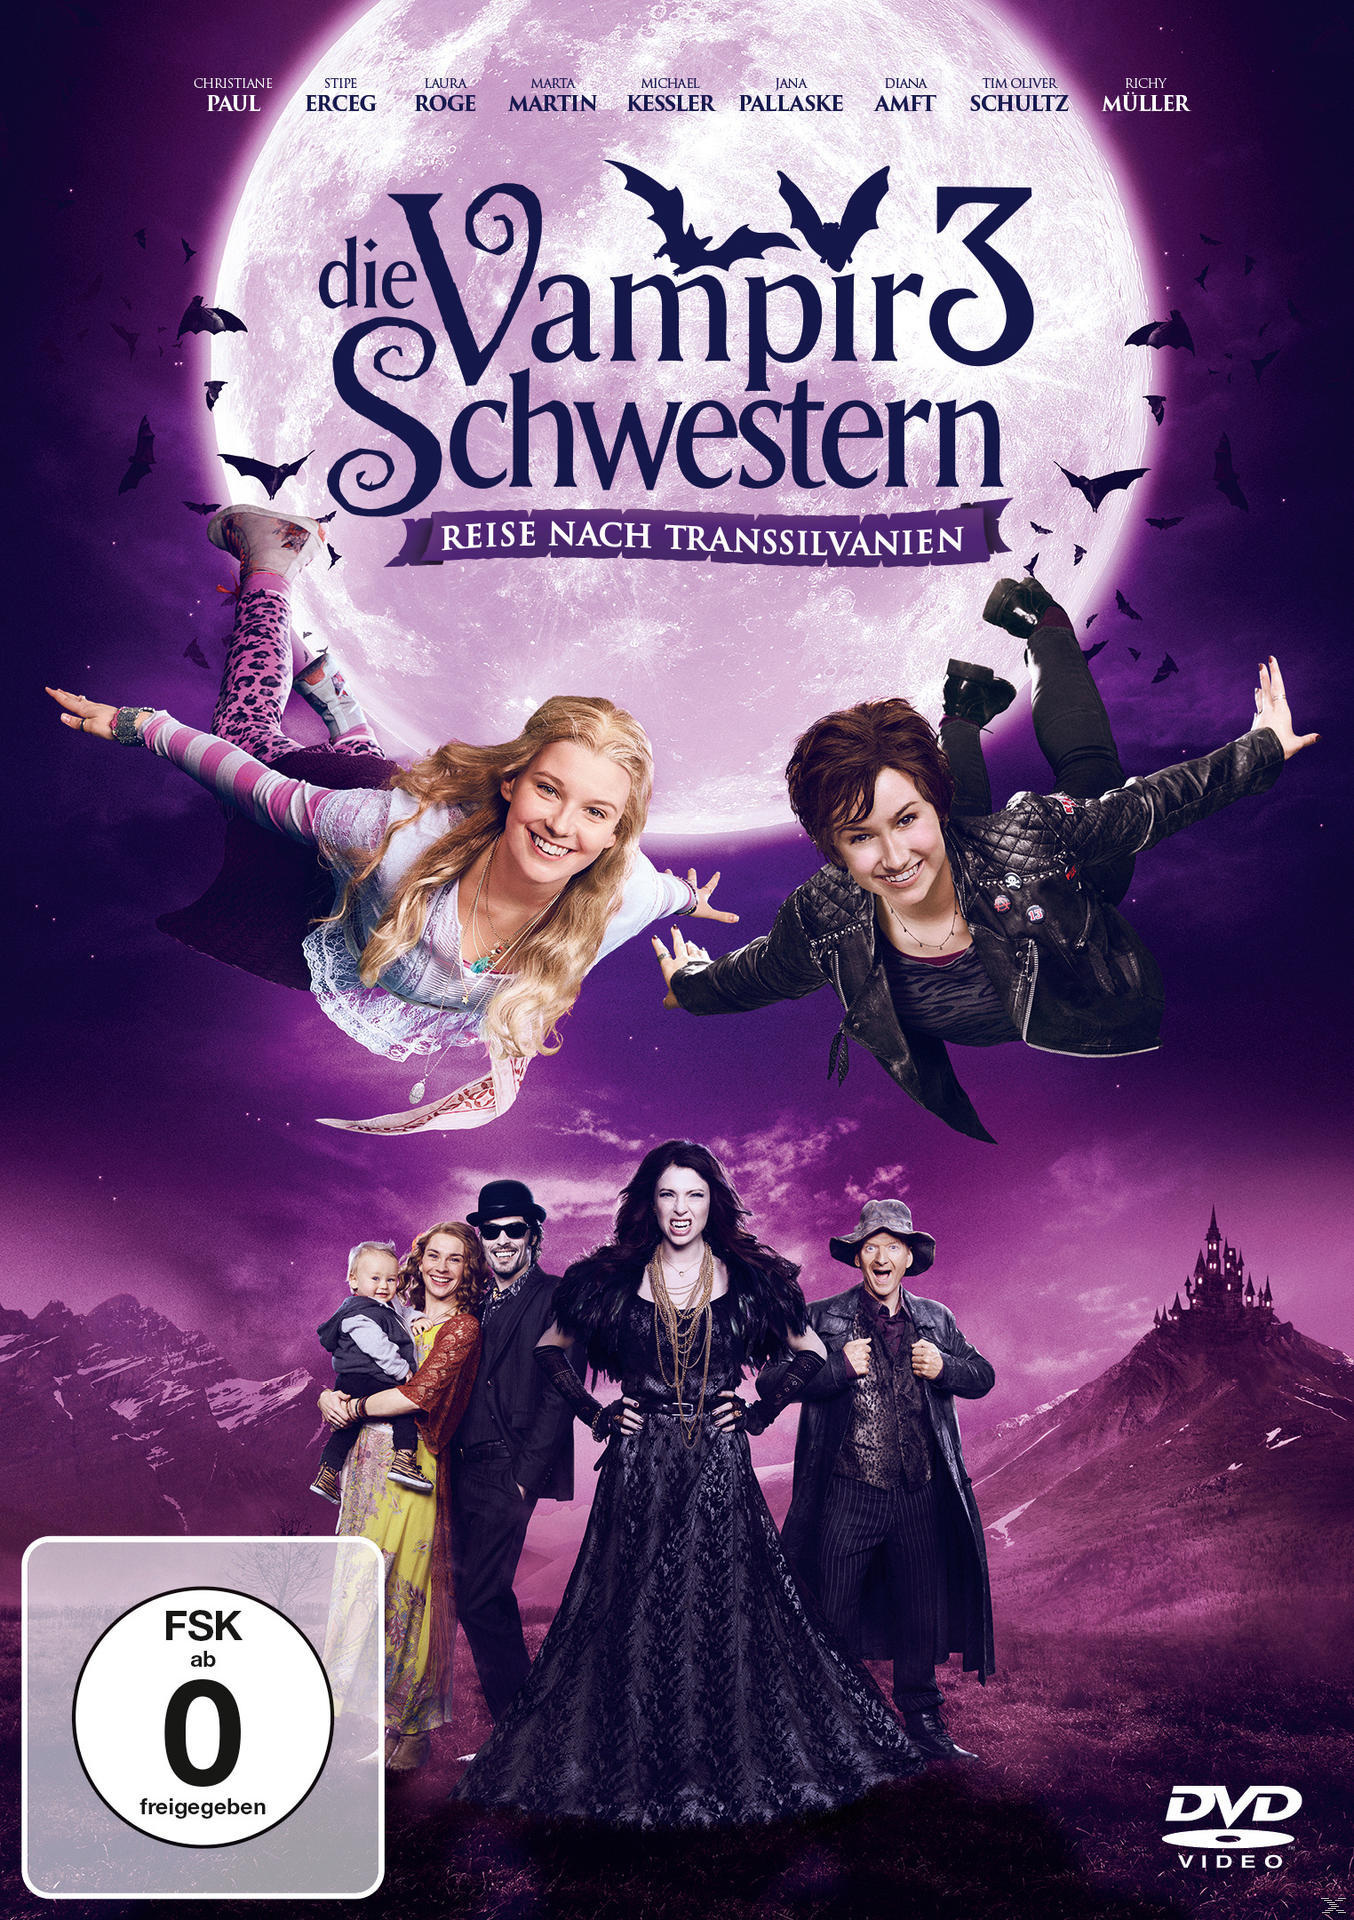 Die Vampirschwestern 3 - Reise nach Transsilvanien DVD